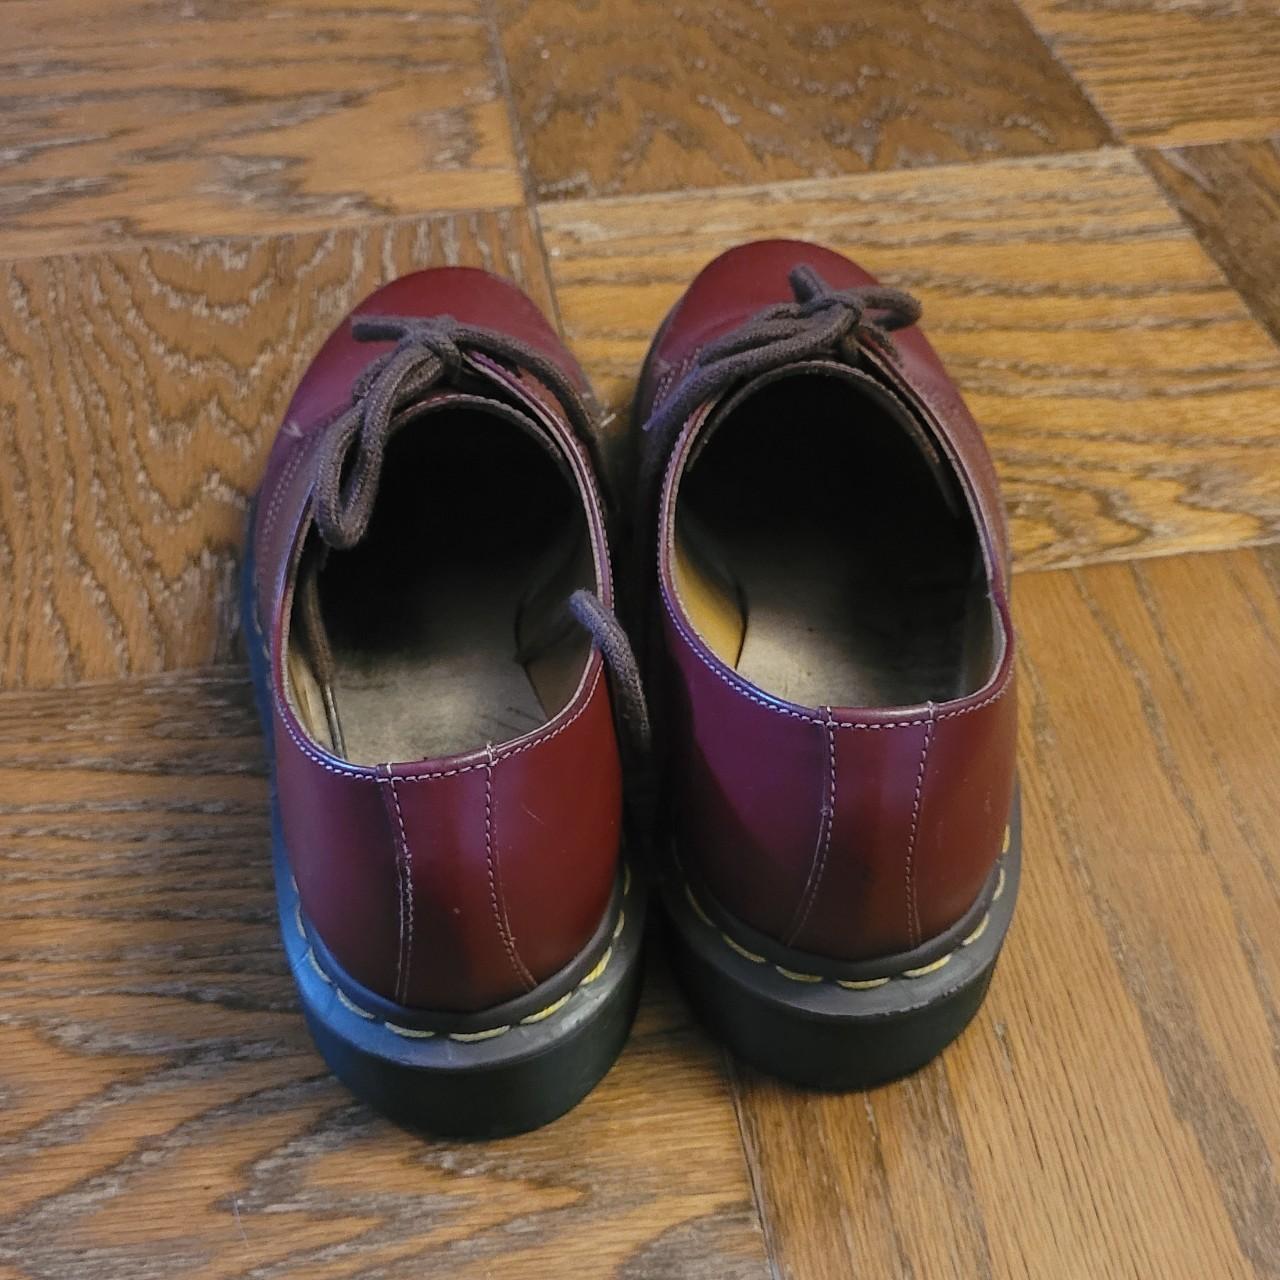 Dr. Martens Men's Red and Burgundy Footwear (3)